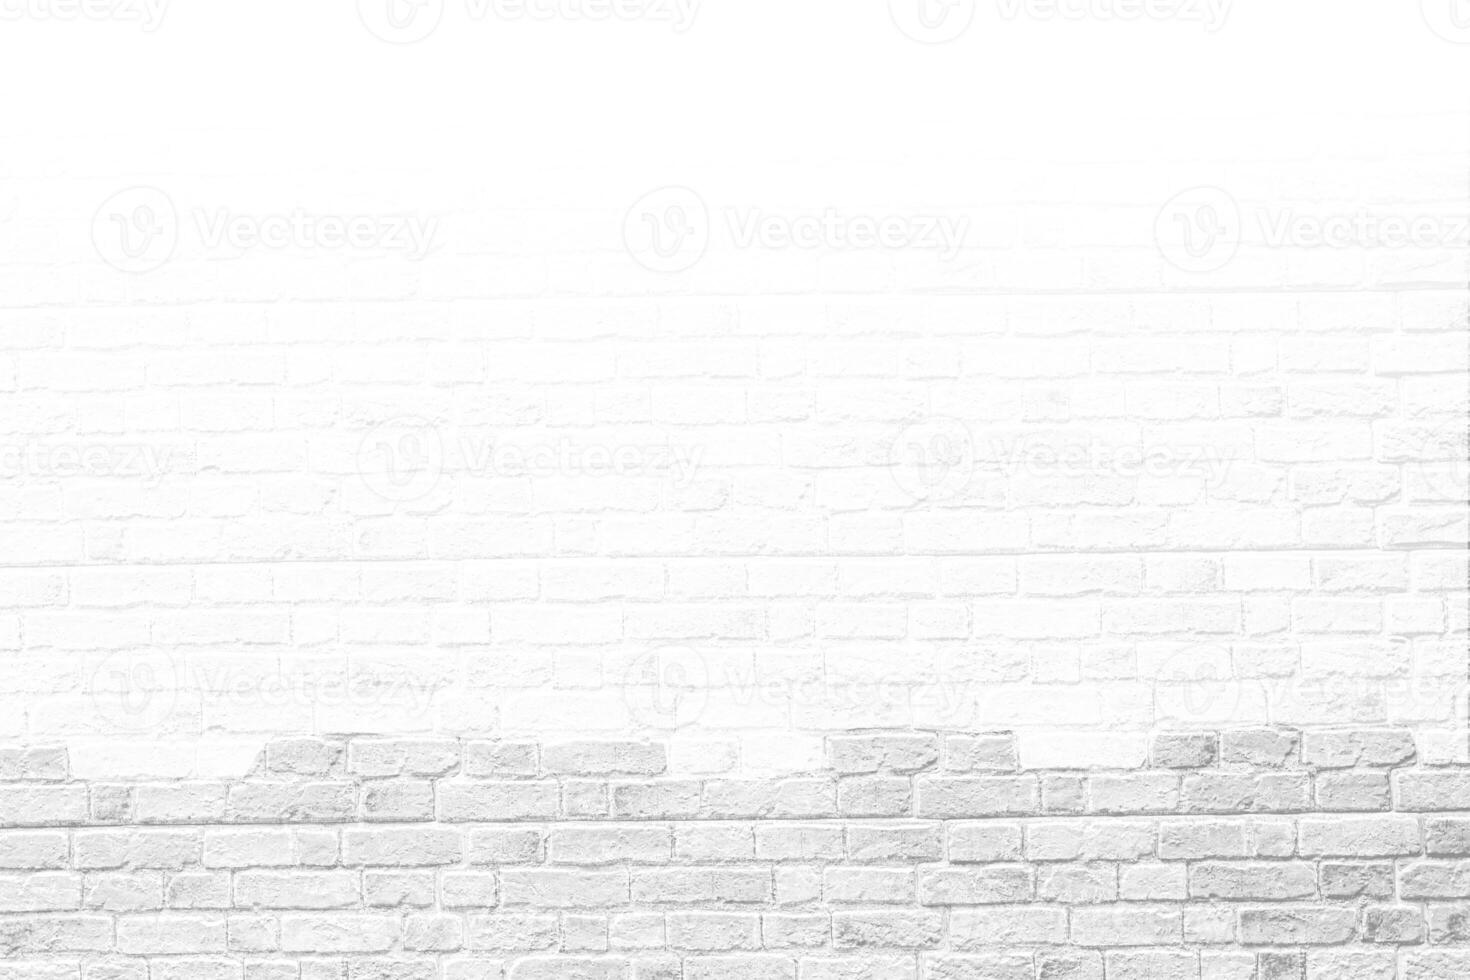 tegel vägg med vit hål, antik gammal grunge vit och grå textur bakgrund. foto